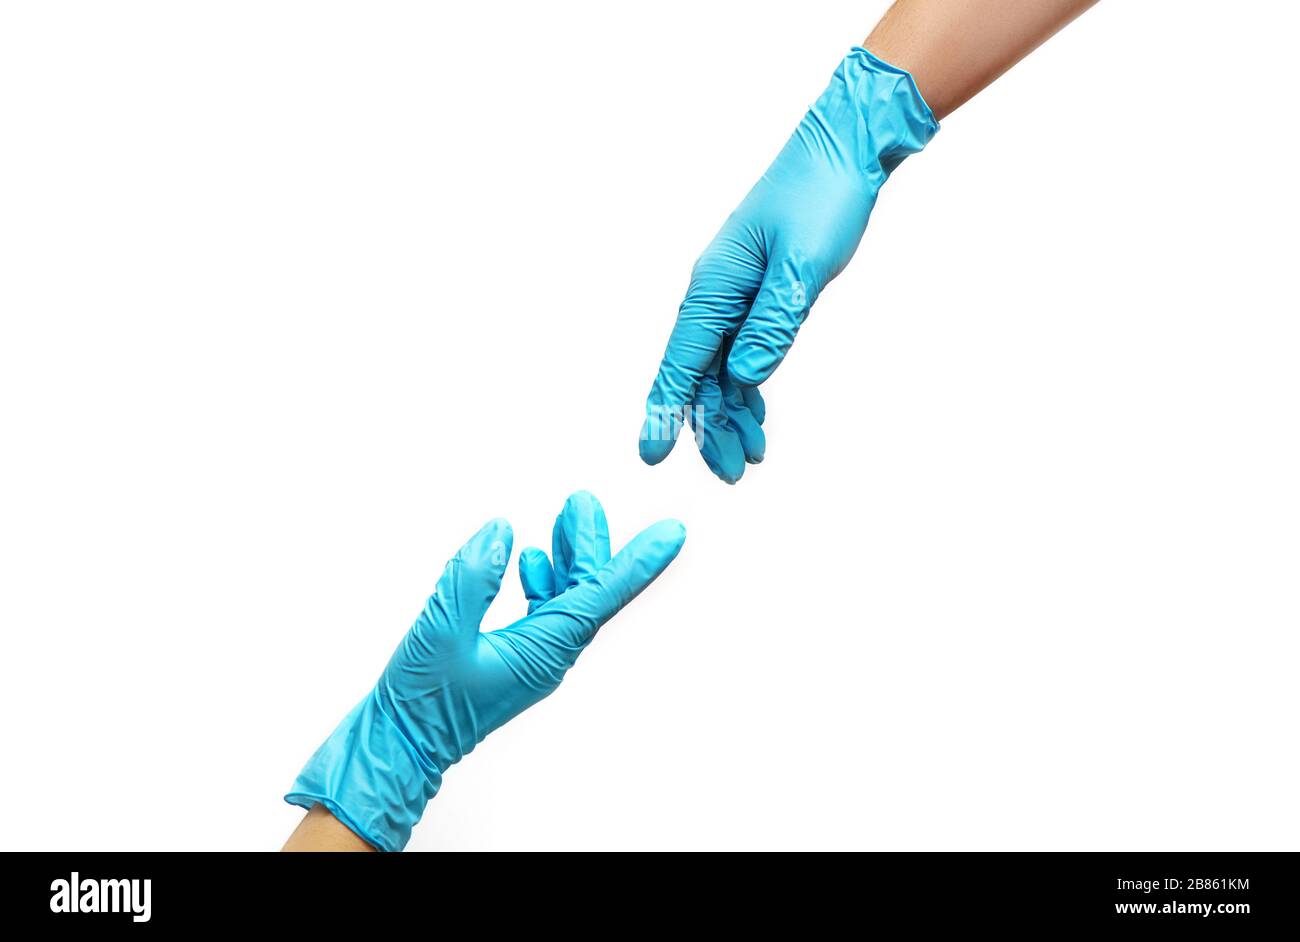 Hände von Menschen in medizinischen Handschuhen, die sich gegenseitig auf weißem Hintergrund erreichen. COVID-19 Pandemie-Konzept. Stockfoto